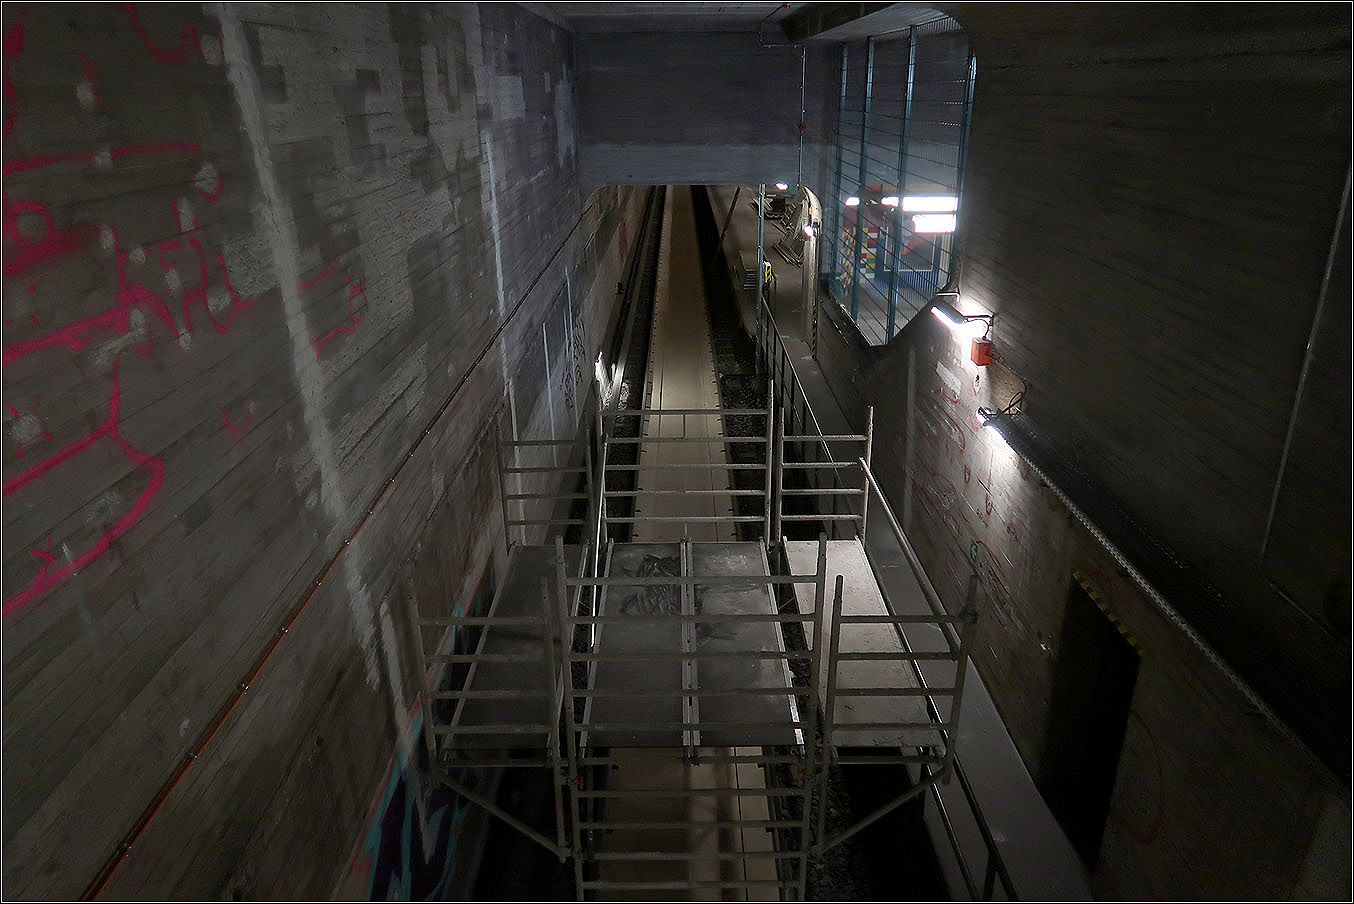 Geheimnisse der Berliner U-Bahn - 

Hier ein Blick von der Zugangsebene auf den oberen, eigentlich für die U9 gedachten Gleisbereich an der doppelstöckigen Station Schloßstraße. Vor einiger Zeit hat man angedacht, die Tunnelanlagen so umzubauen, die Tunnelanlagen so umzugestalten, dass beiden Fahrtrichtungen der U9 an der oberen Ebene abgewickelt hätten werden können, da der Betrieb einer zweiten Linie hier wohl in absehbarer Zeit hier nicht kommen wird. Aus Kostengründen hat man dies wohl fallengelassen. 

14.03.2023 (M)

